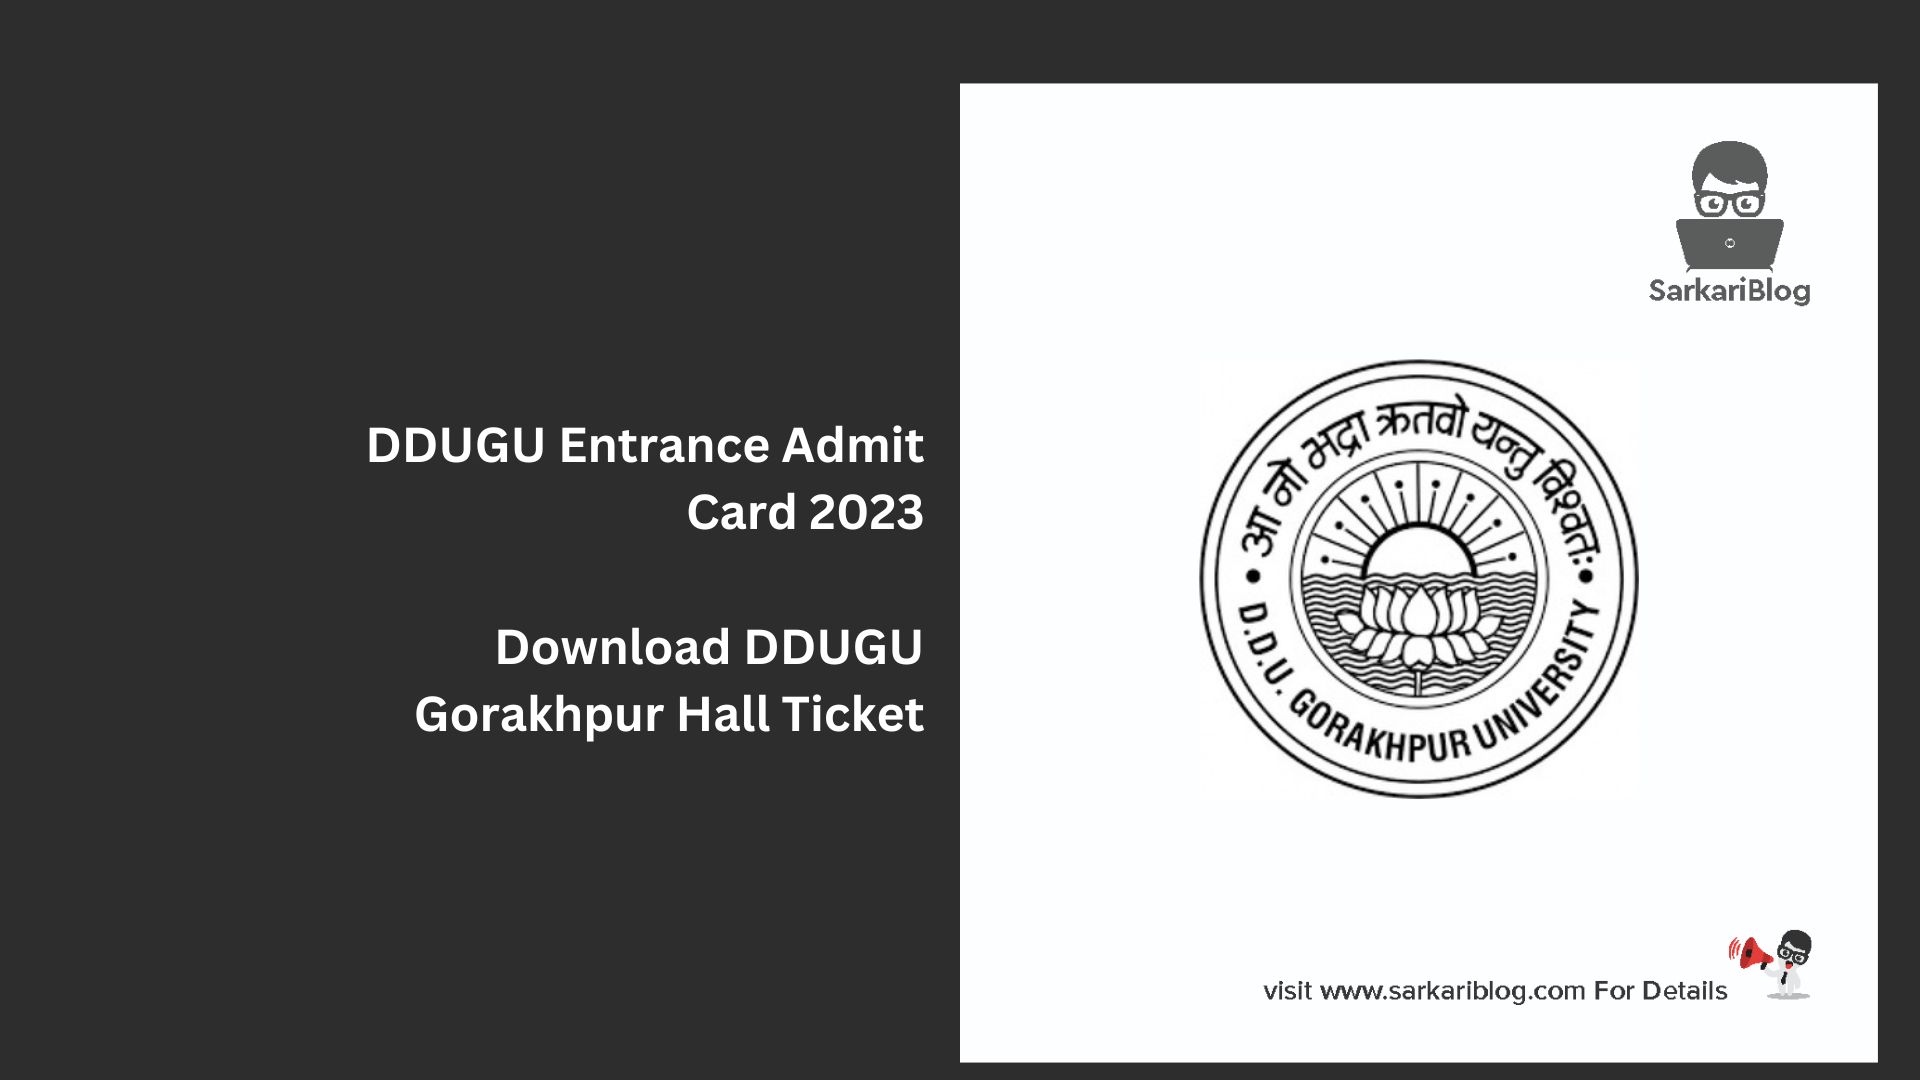 DDUGU Entrance Admit Card 2023